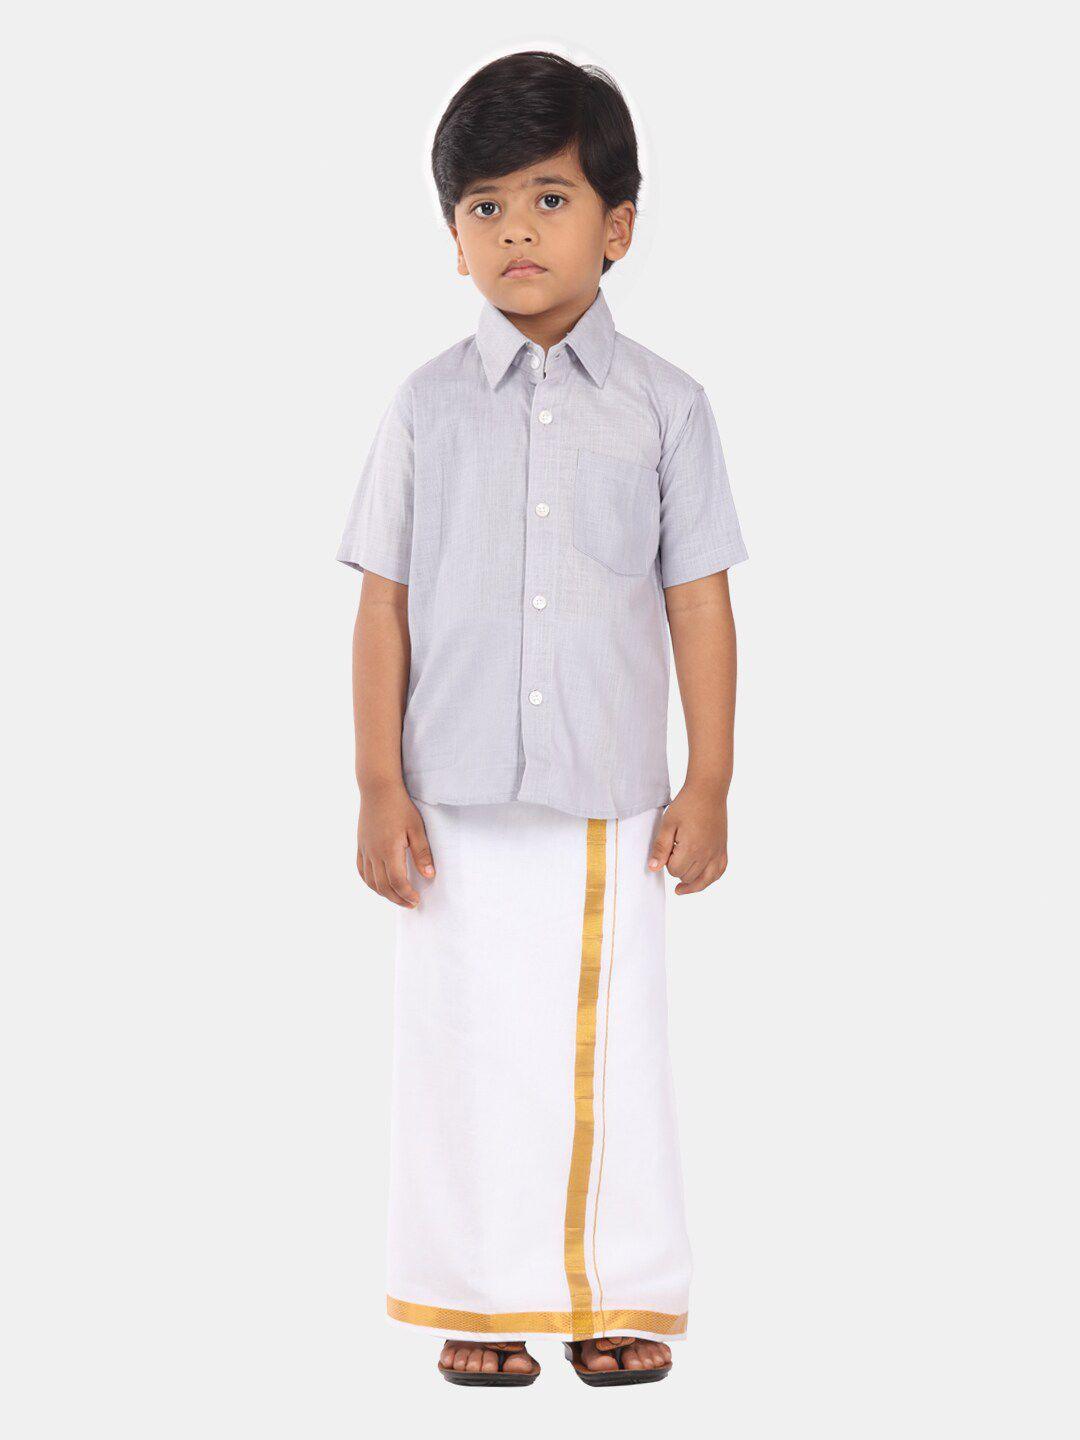 Sethukrishna Boys Ethnic Pure Cotton Shirt And Veshti Clothing Set